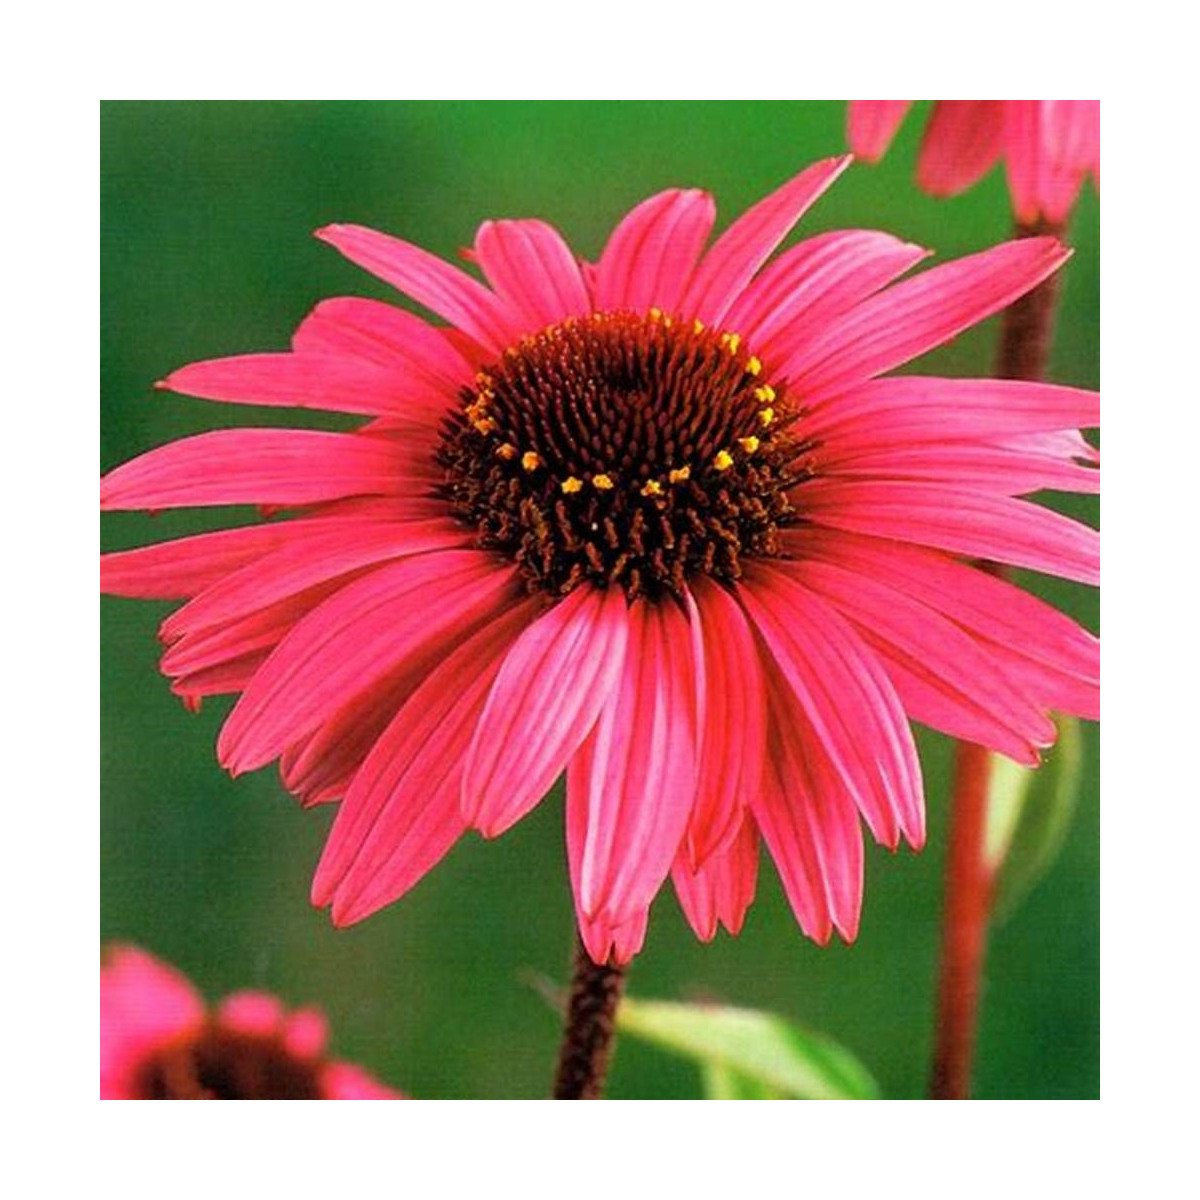 Třapatkovka purpurová - Echinacea - prostokořenná sazenice třapatkovky - 1 ks